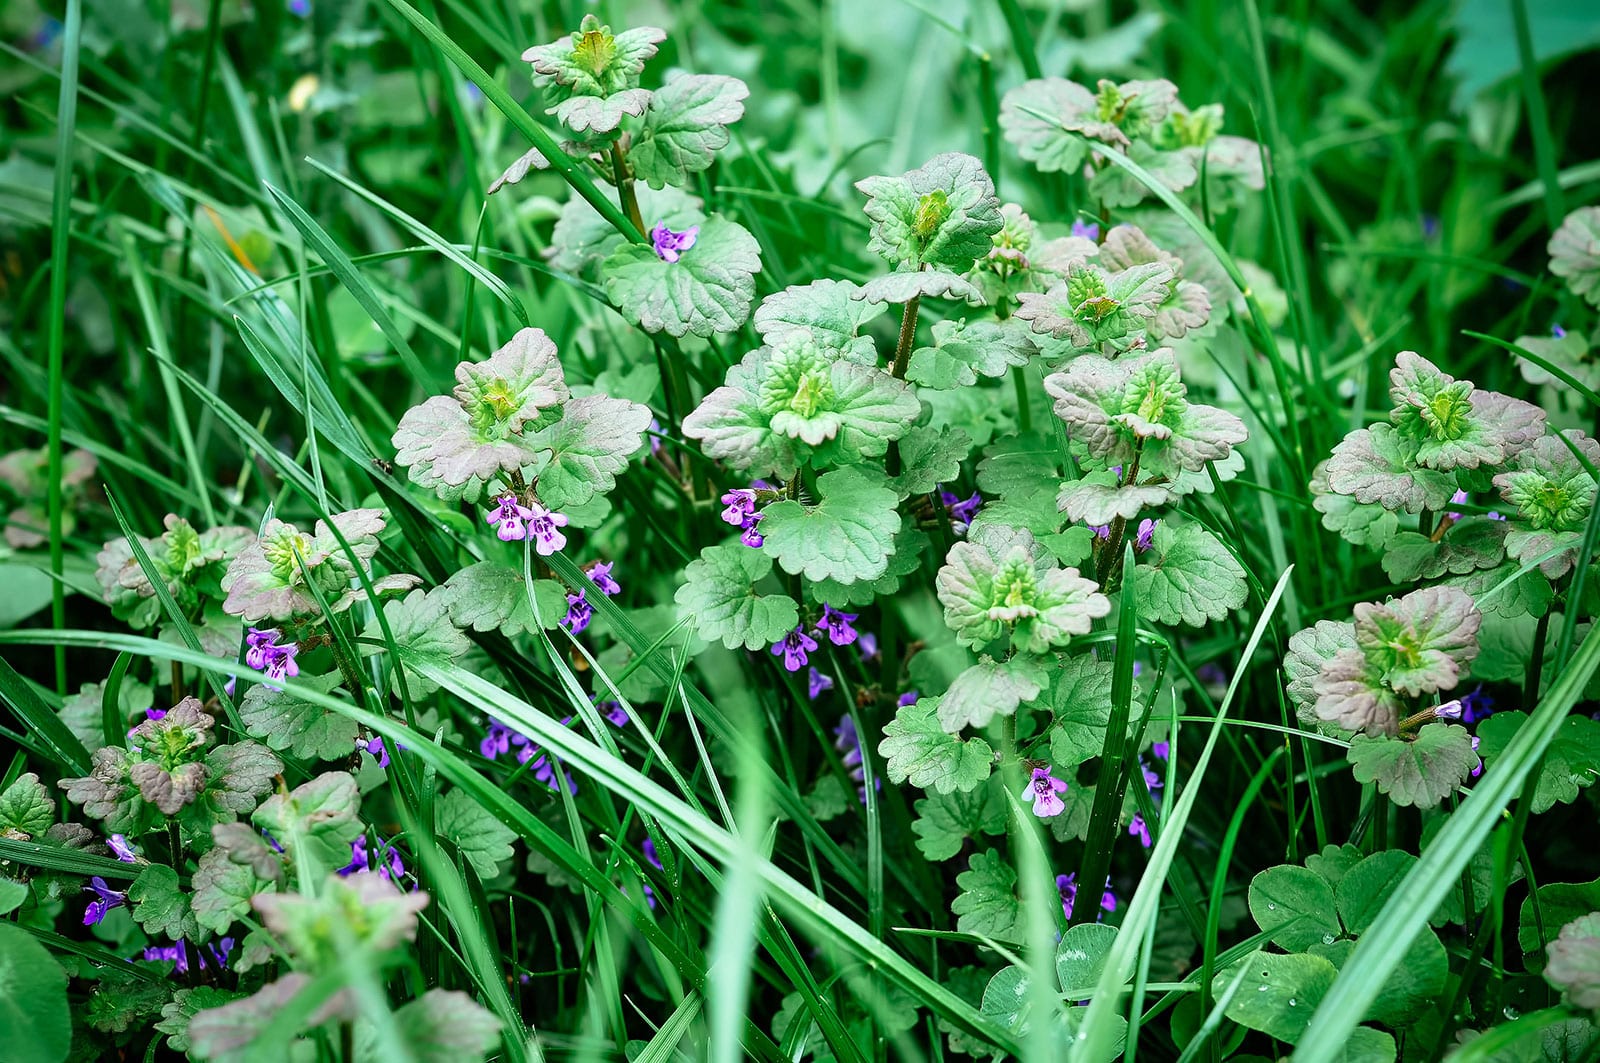 Henbit with little purple flowers, growing in grass